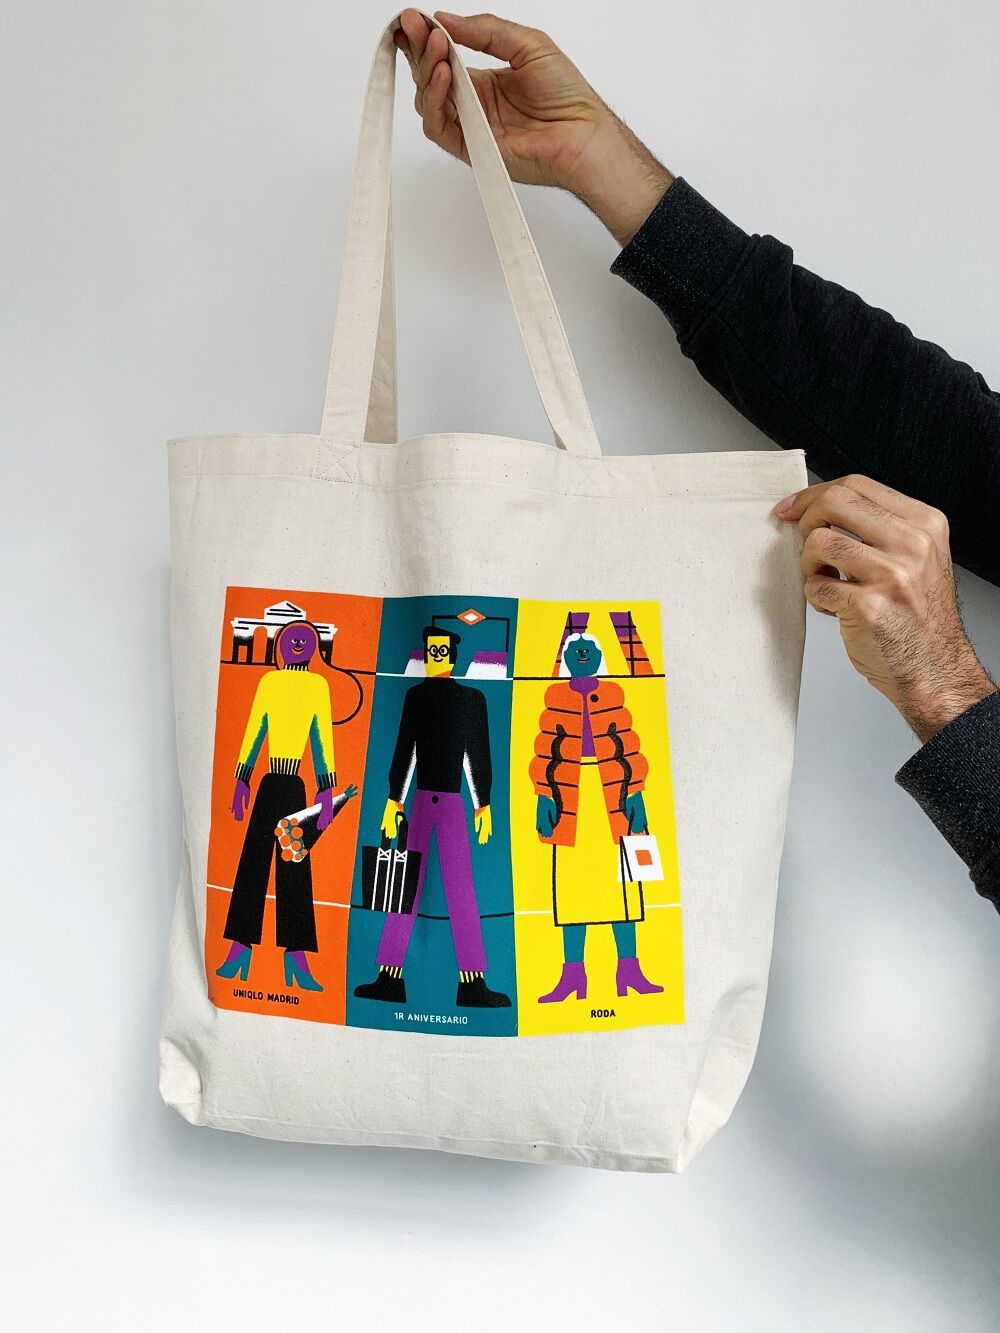 Print design for tote bags created by José Antonio Roda for the brand UniQlo